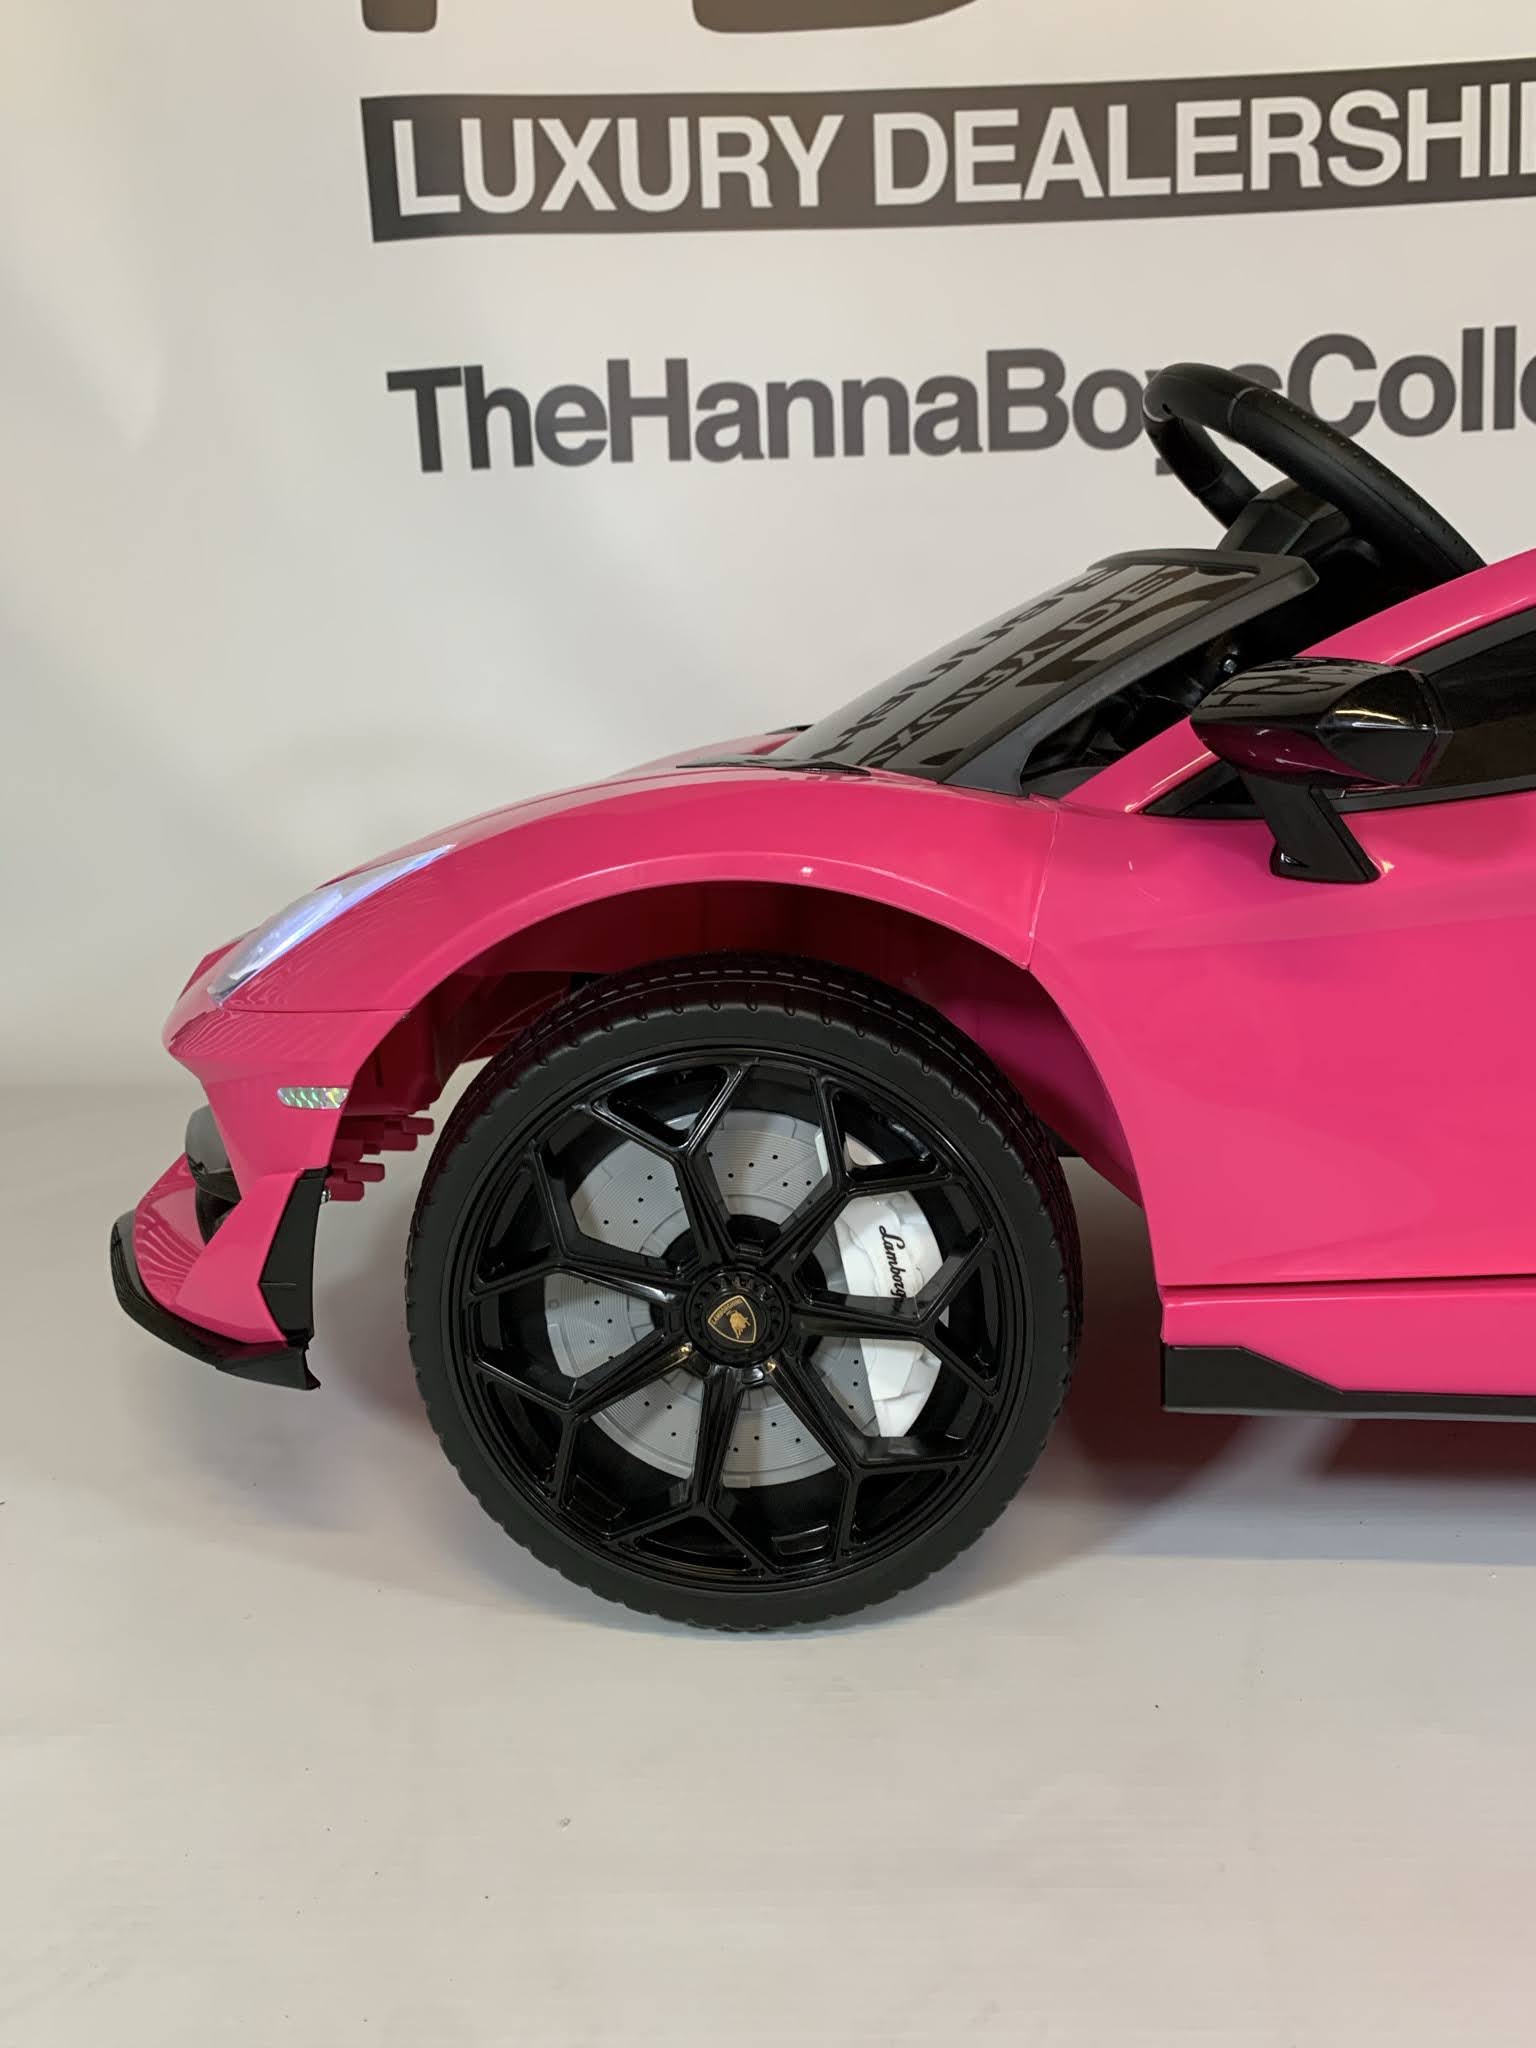 hot pink lamborghini cars